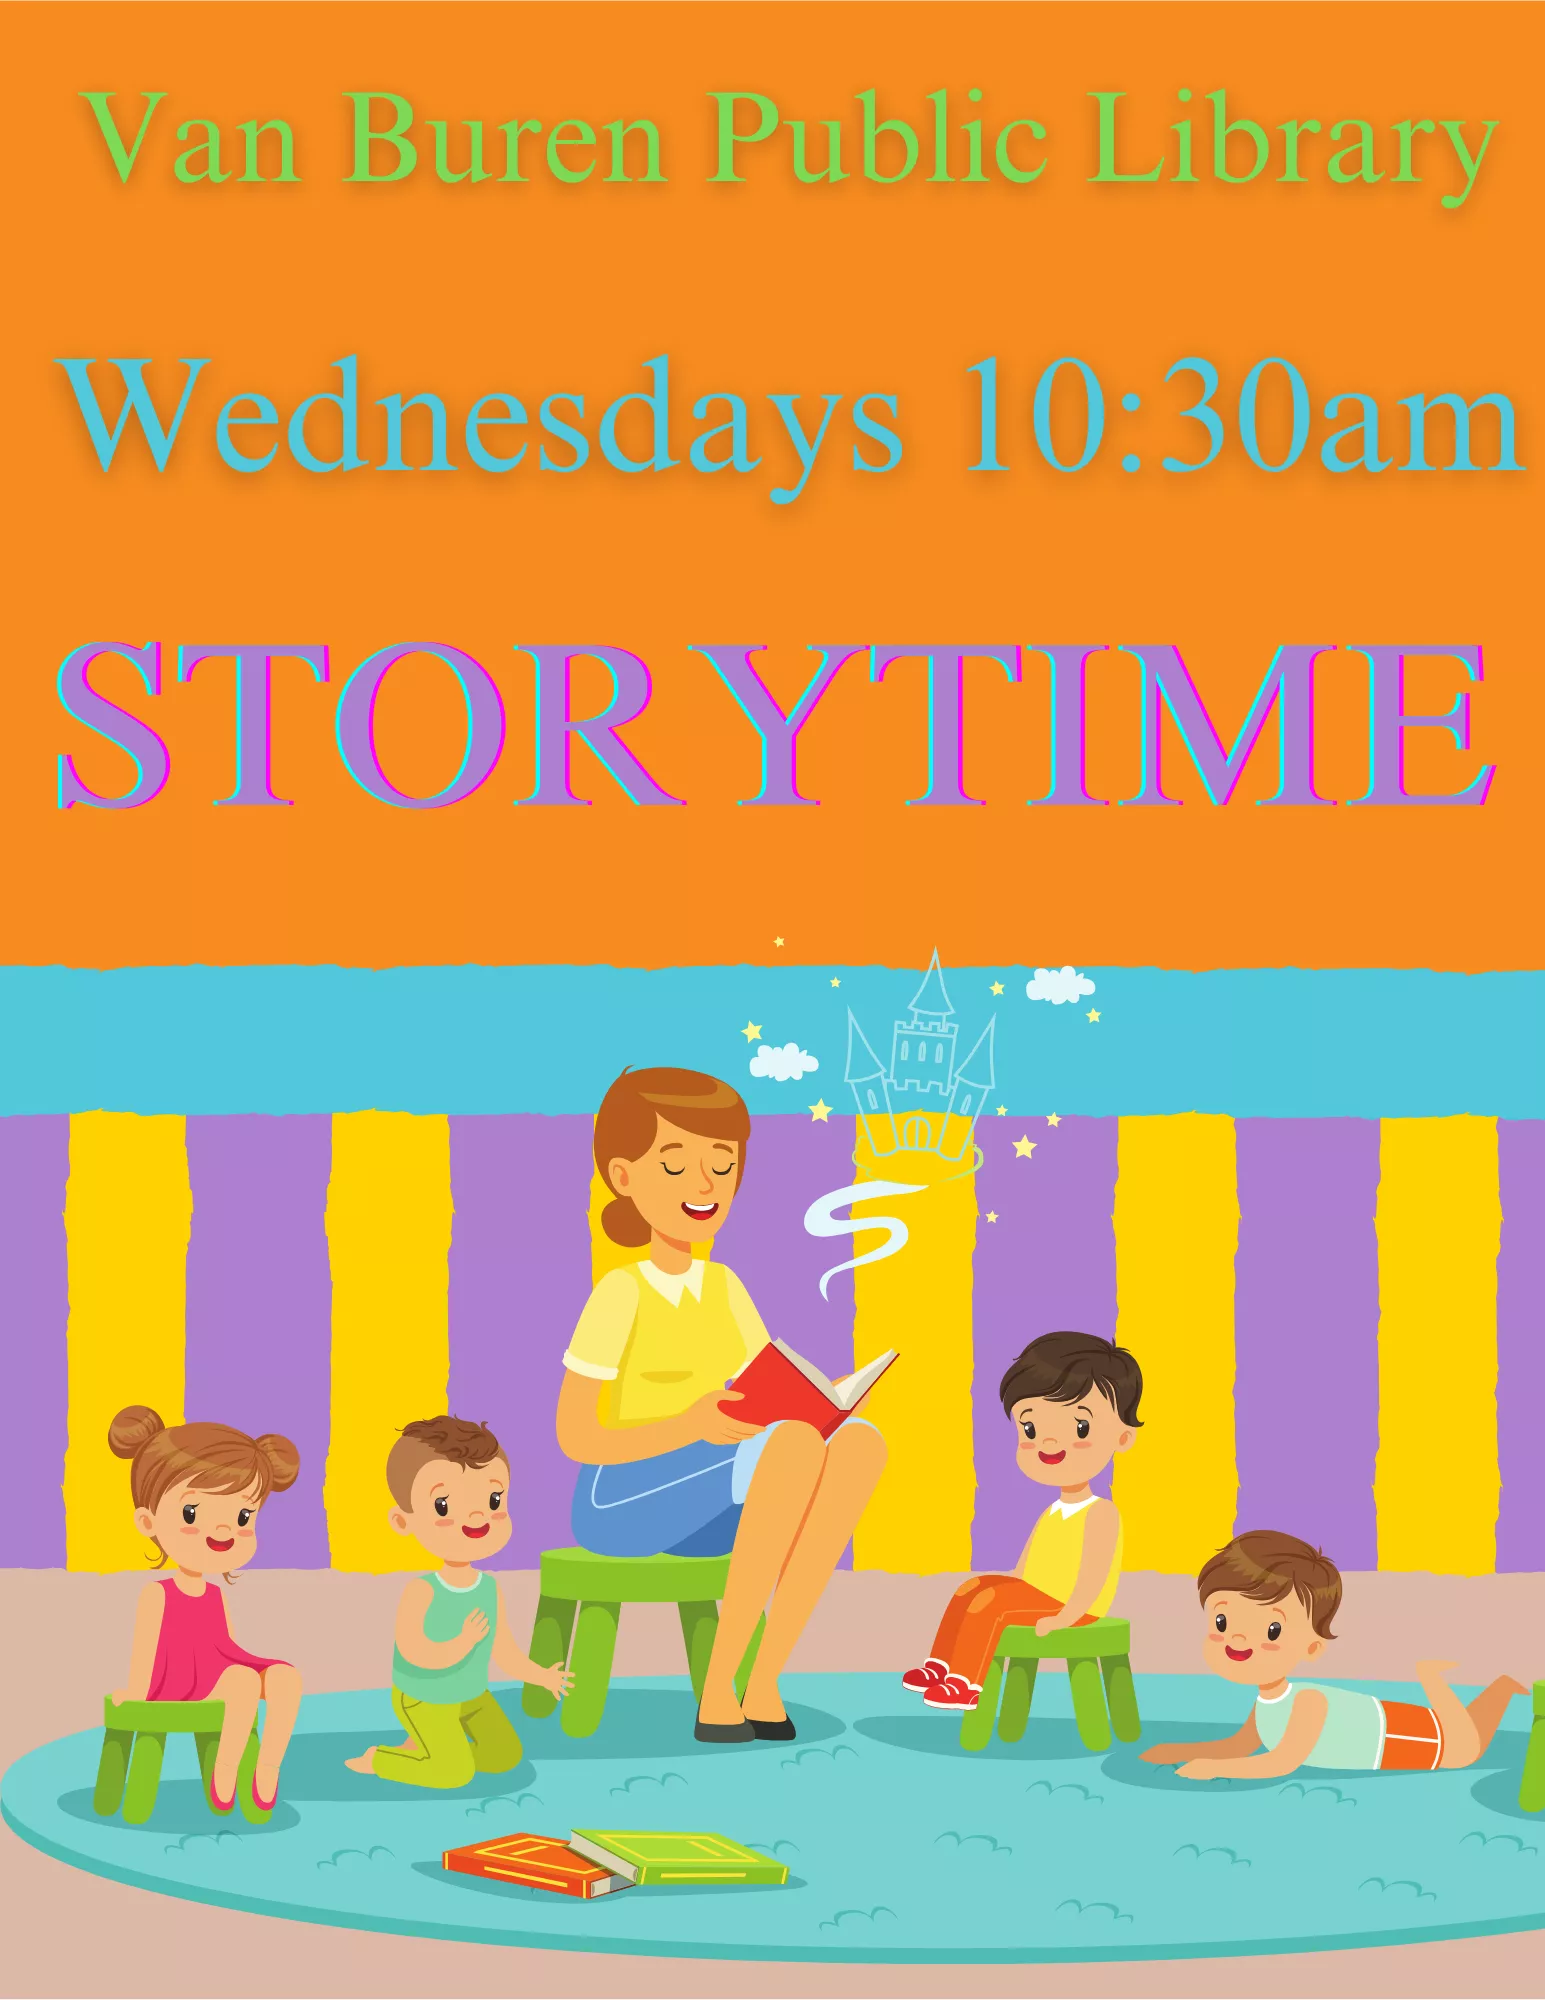 Van Buren Public Library Storytime Wednesday 10;30am